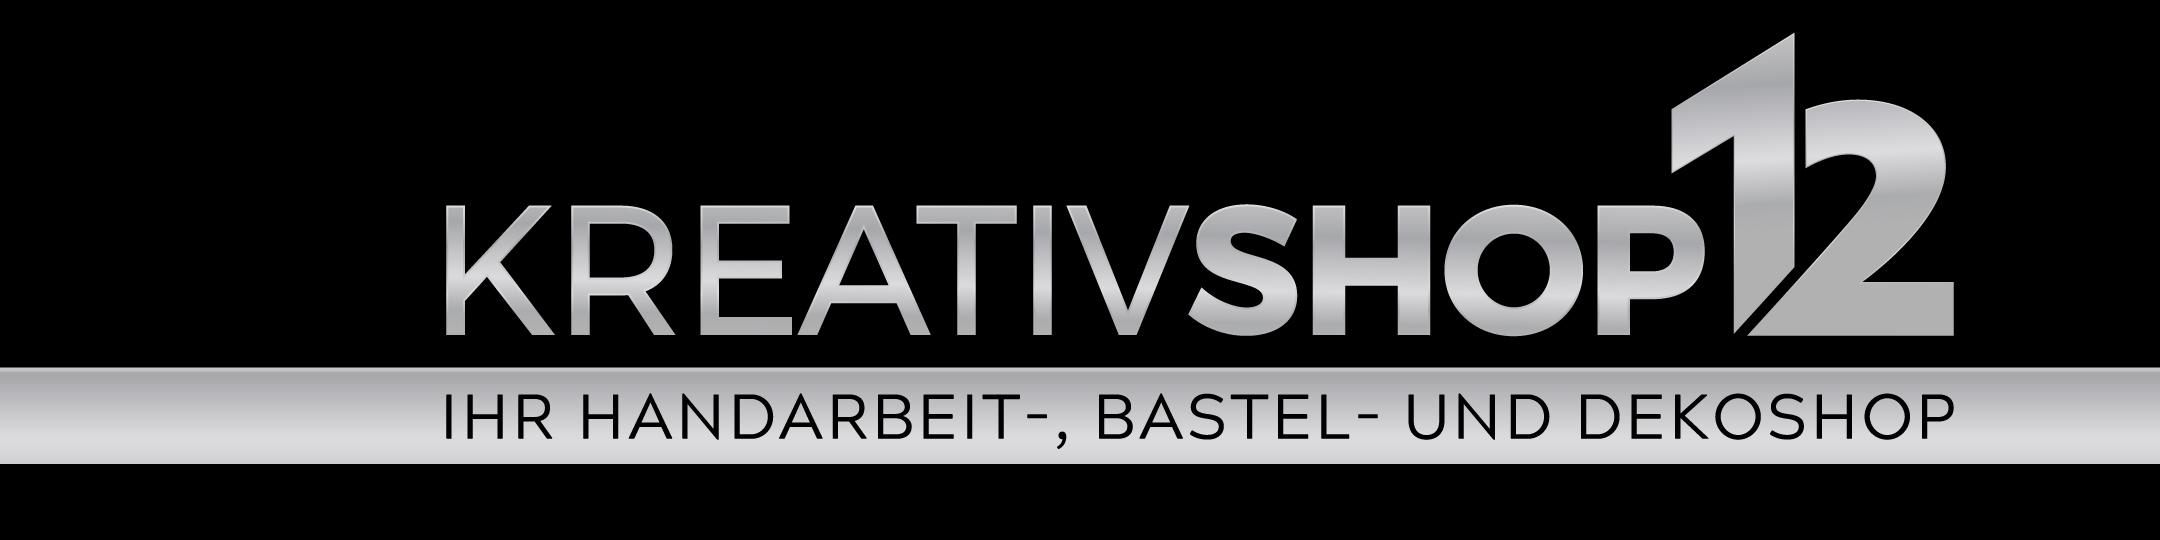 kreativshop12.de- Logo - Bewertungen